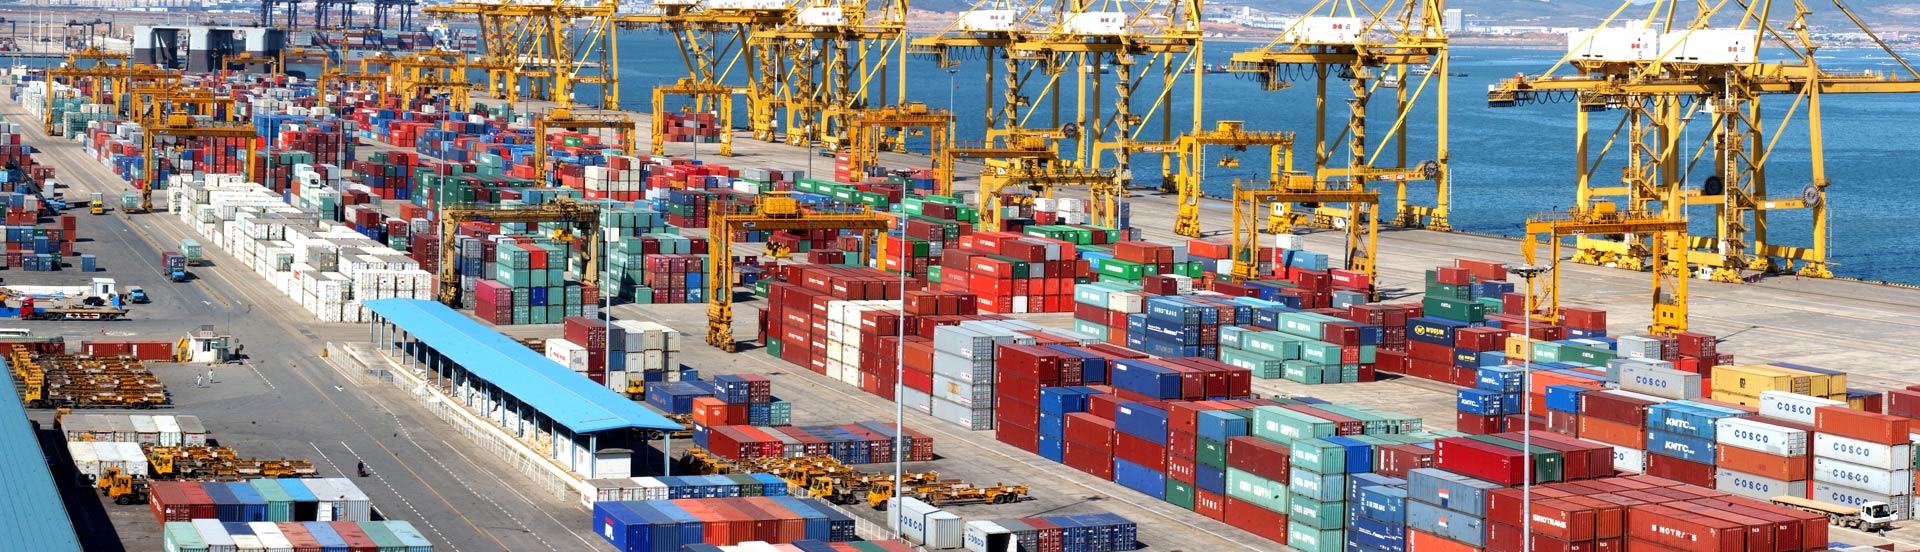 天津港到Rotterdam, Netherlands 鹿特丹,荷兰
海运费集装箱海运费